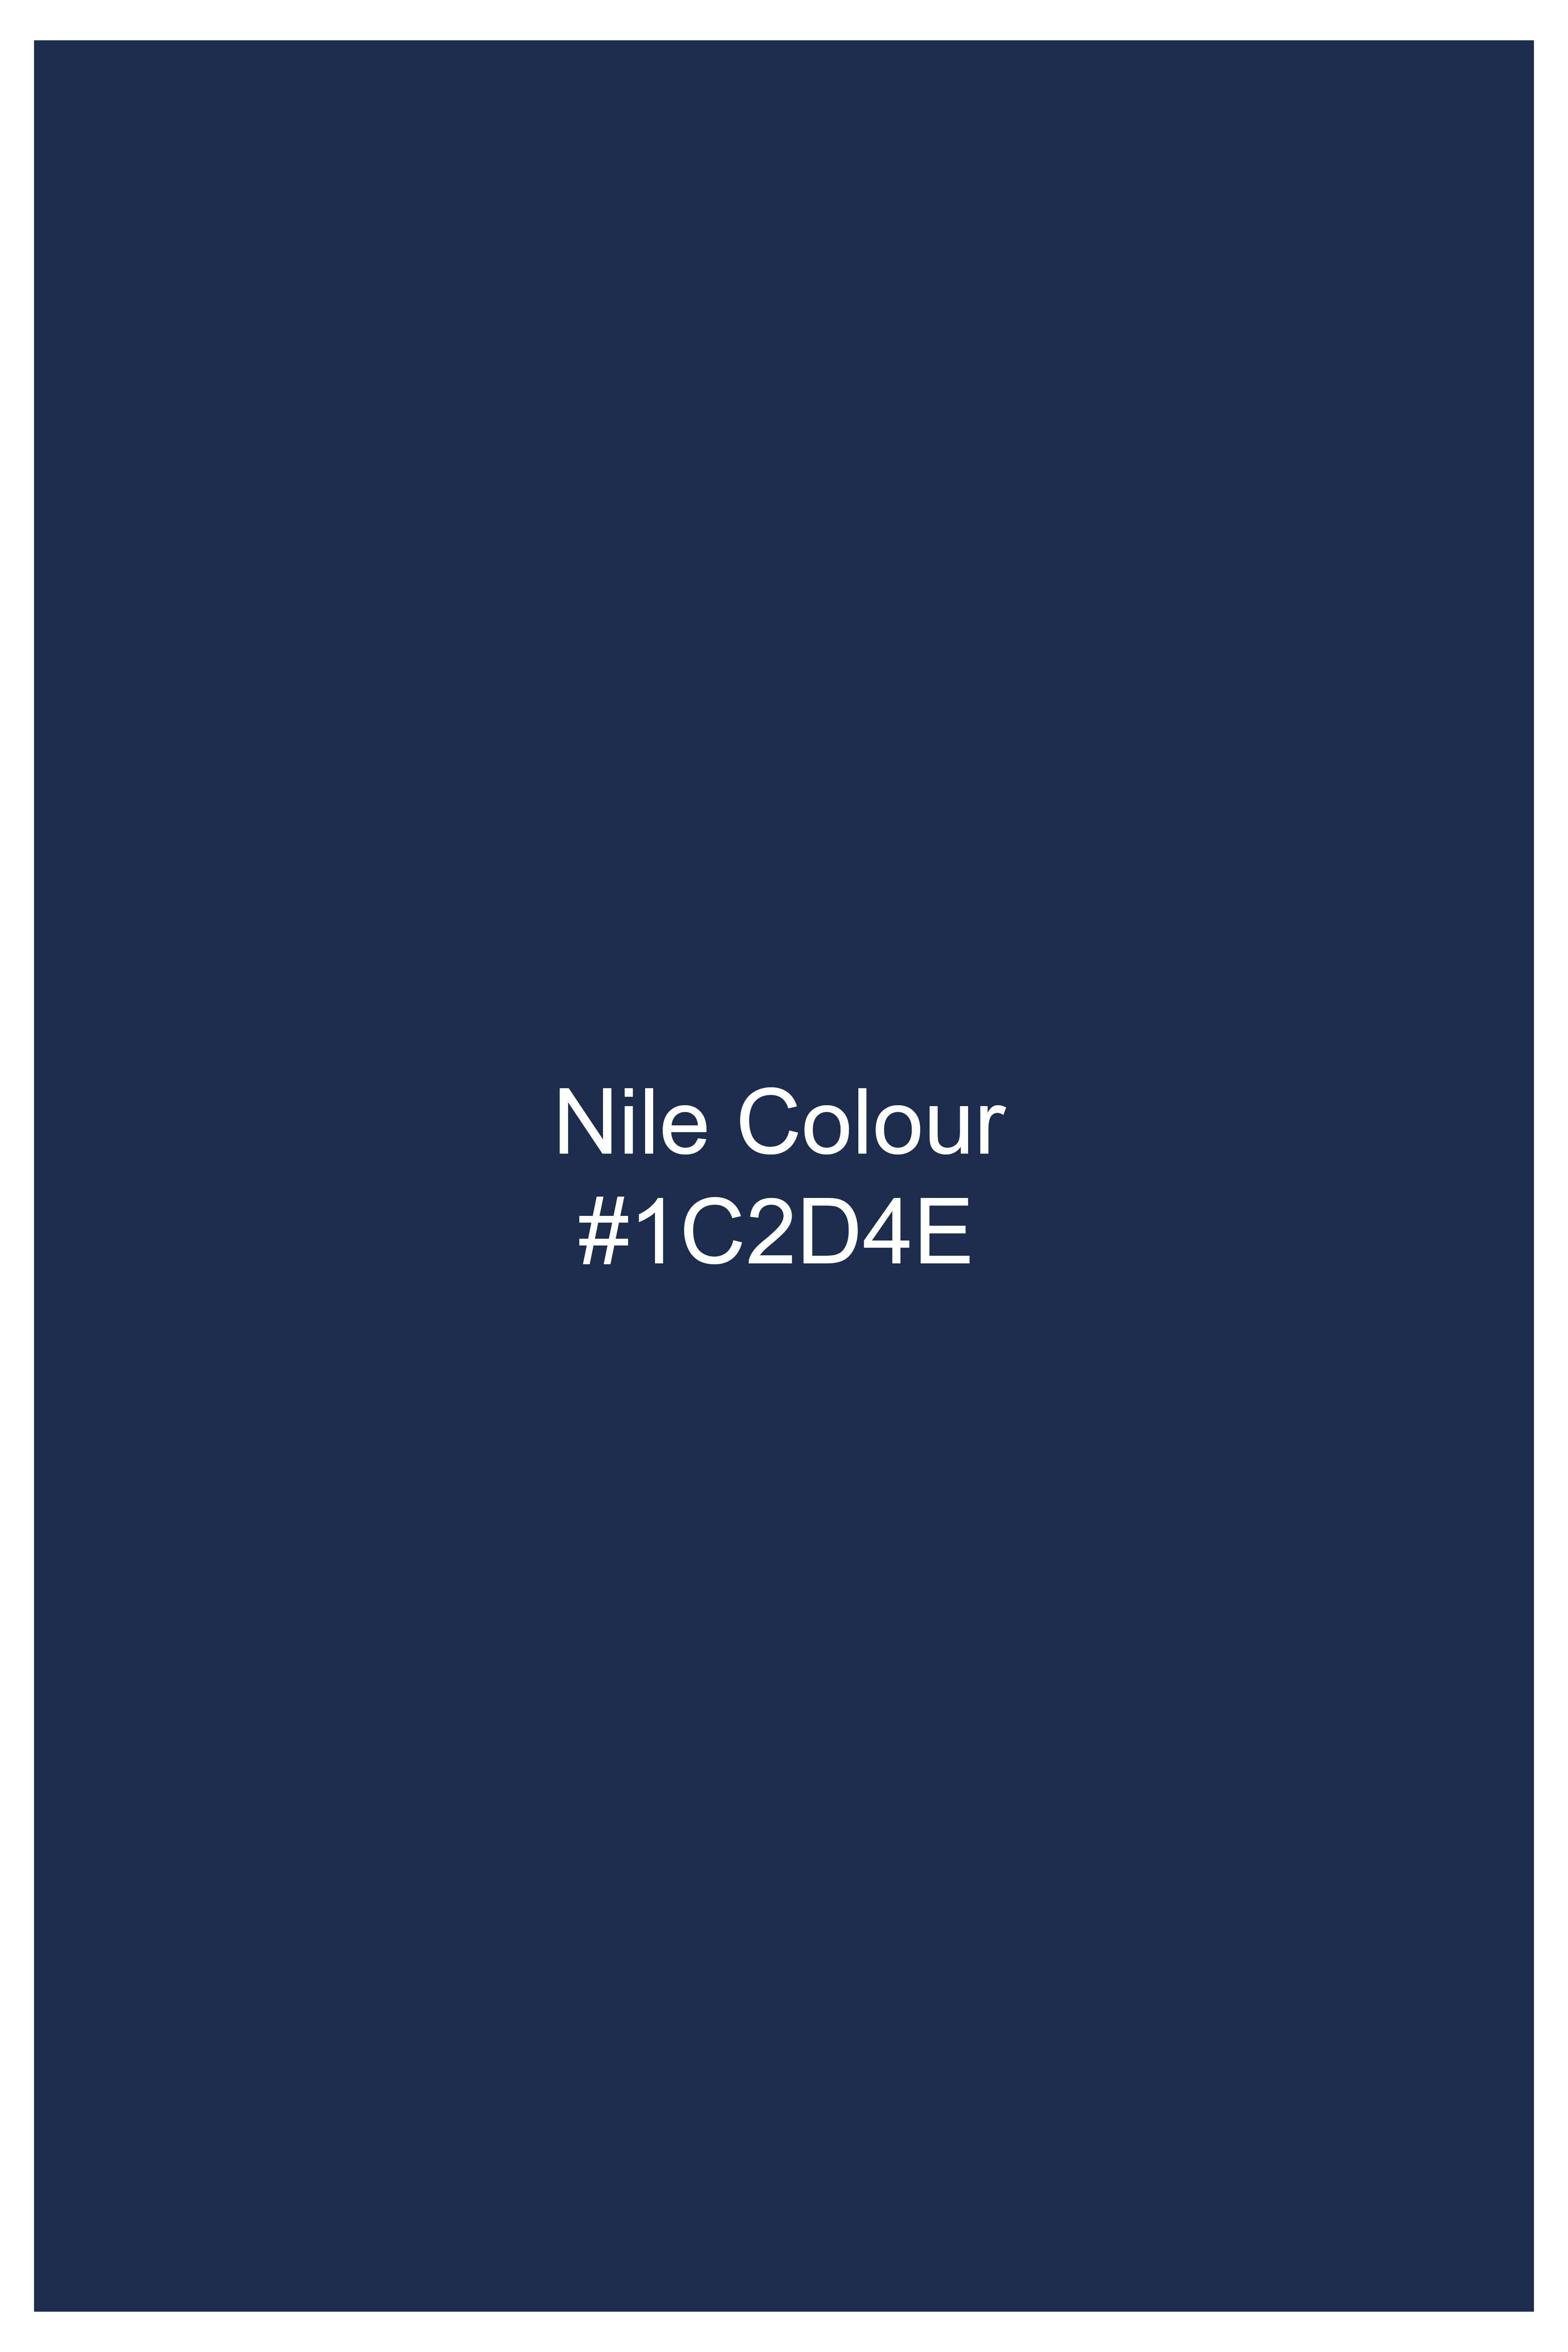 Nile Blue Wool Rich Pant T2806-28, T2806-30, T2806-32, T2806-34, T2806-36, T2806-38, T2806-40, T2806-42, T2806-44